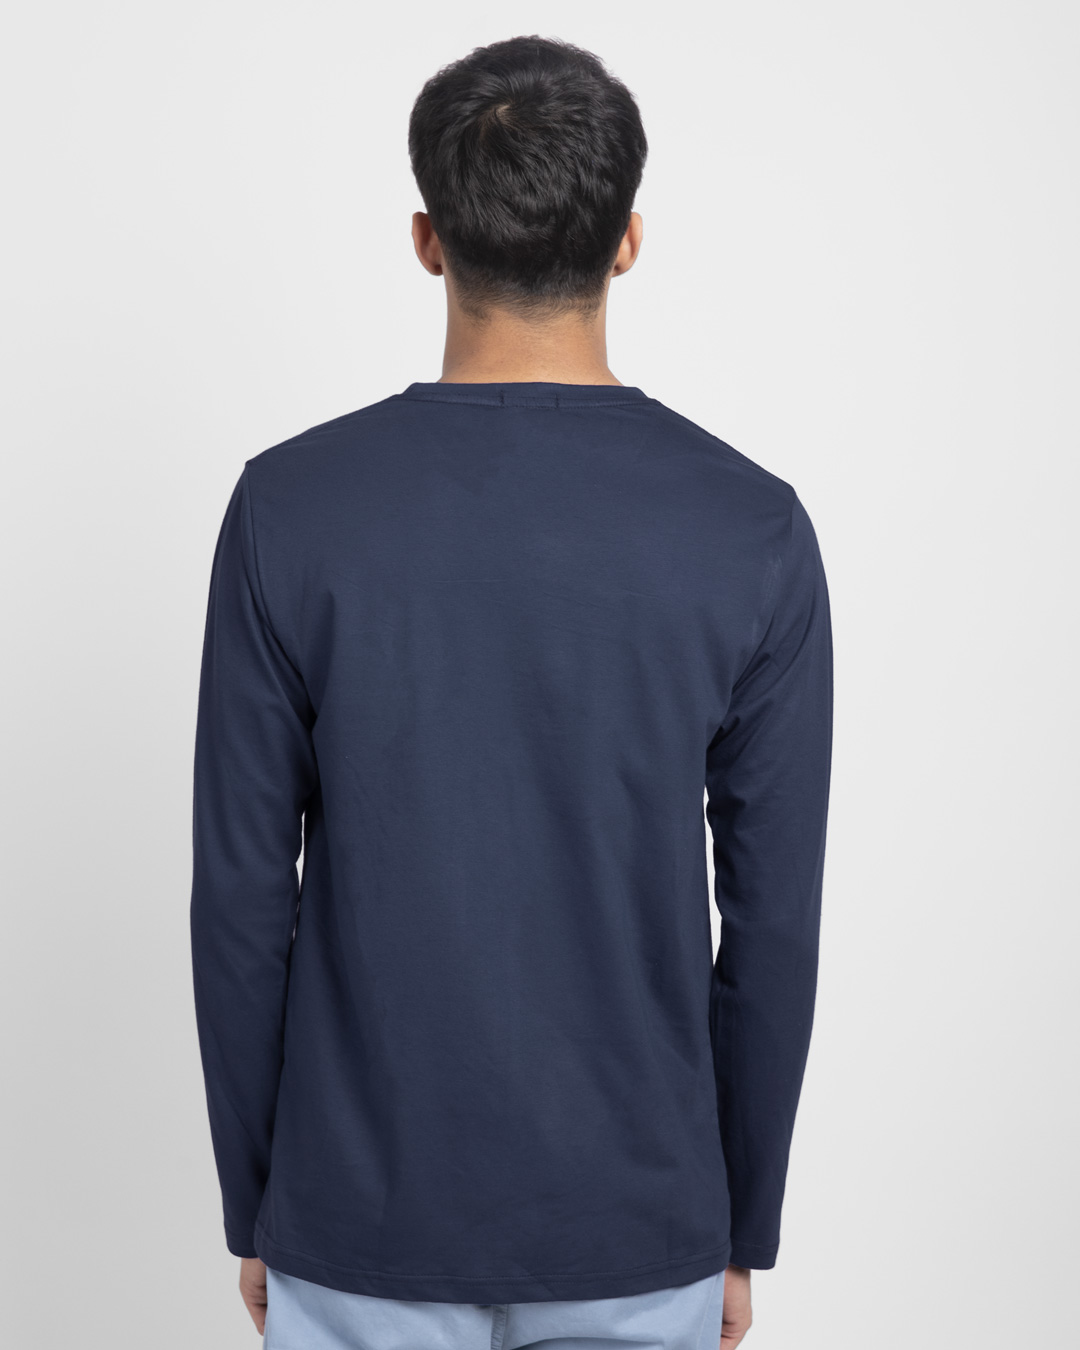 Shop Spidersense Full Sleeve T-Shirt (AVL)-Back